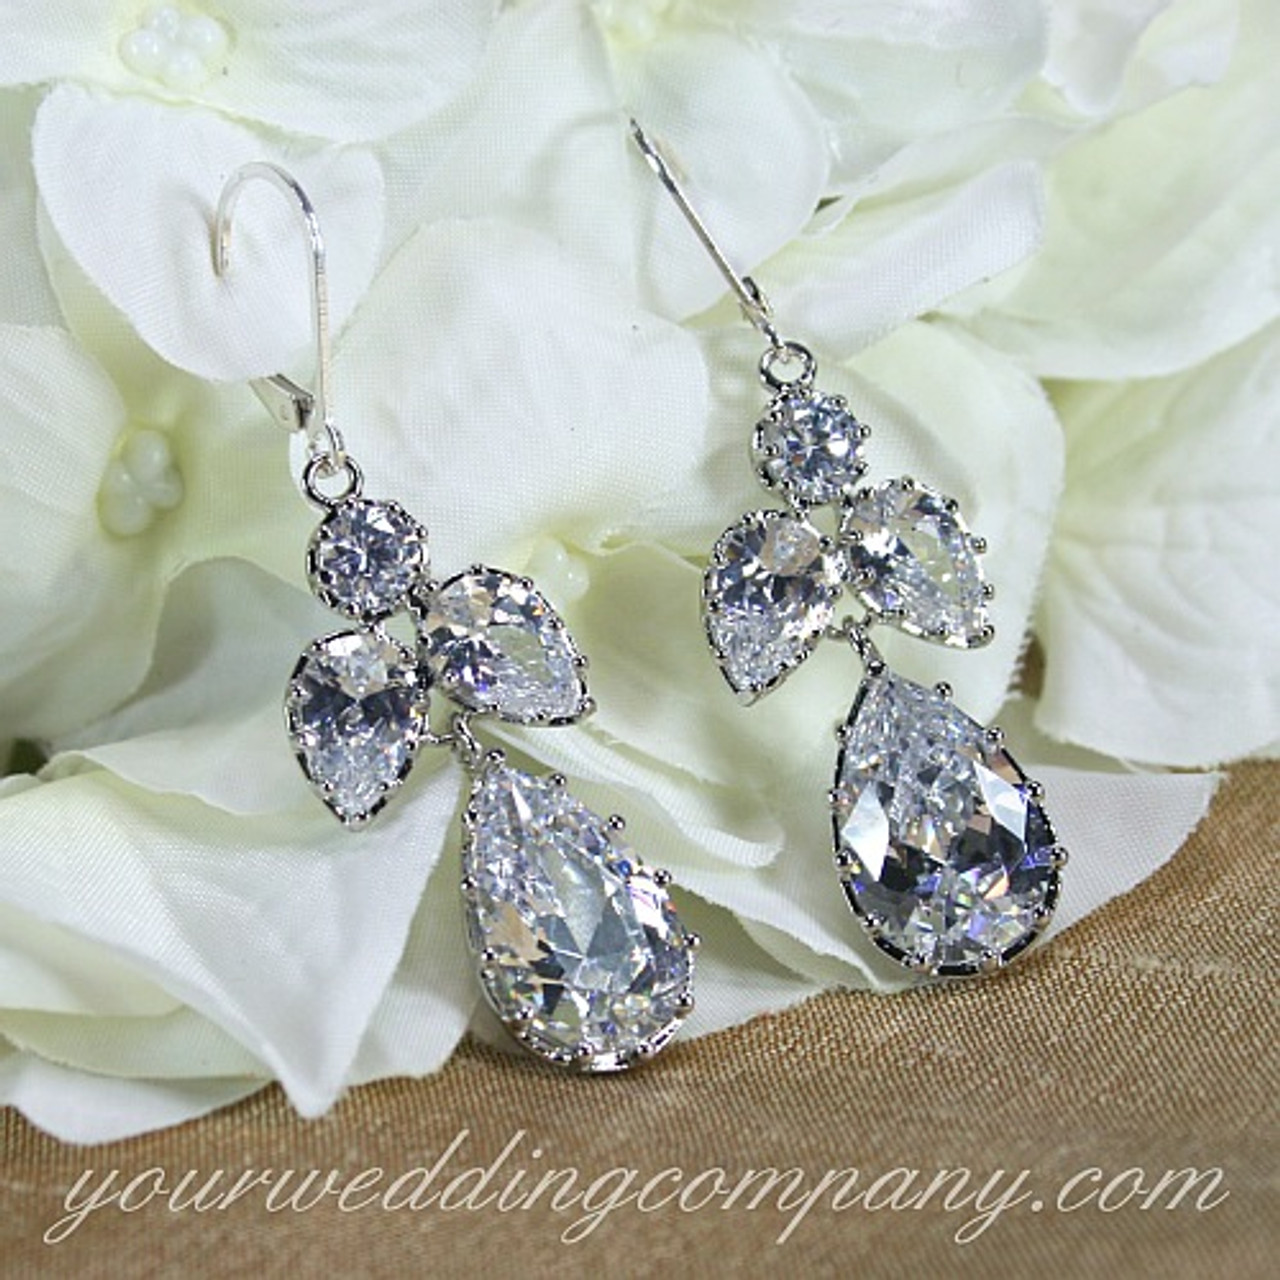 Bridal crystal earrings, Premium European Crystal earrings, Teardrop  dangling earrings, Bridal rhinestone drop earrings in gold or silver